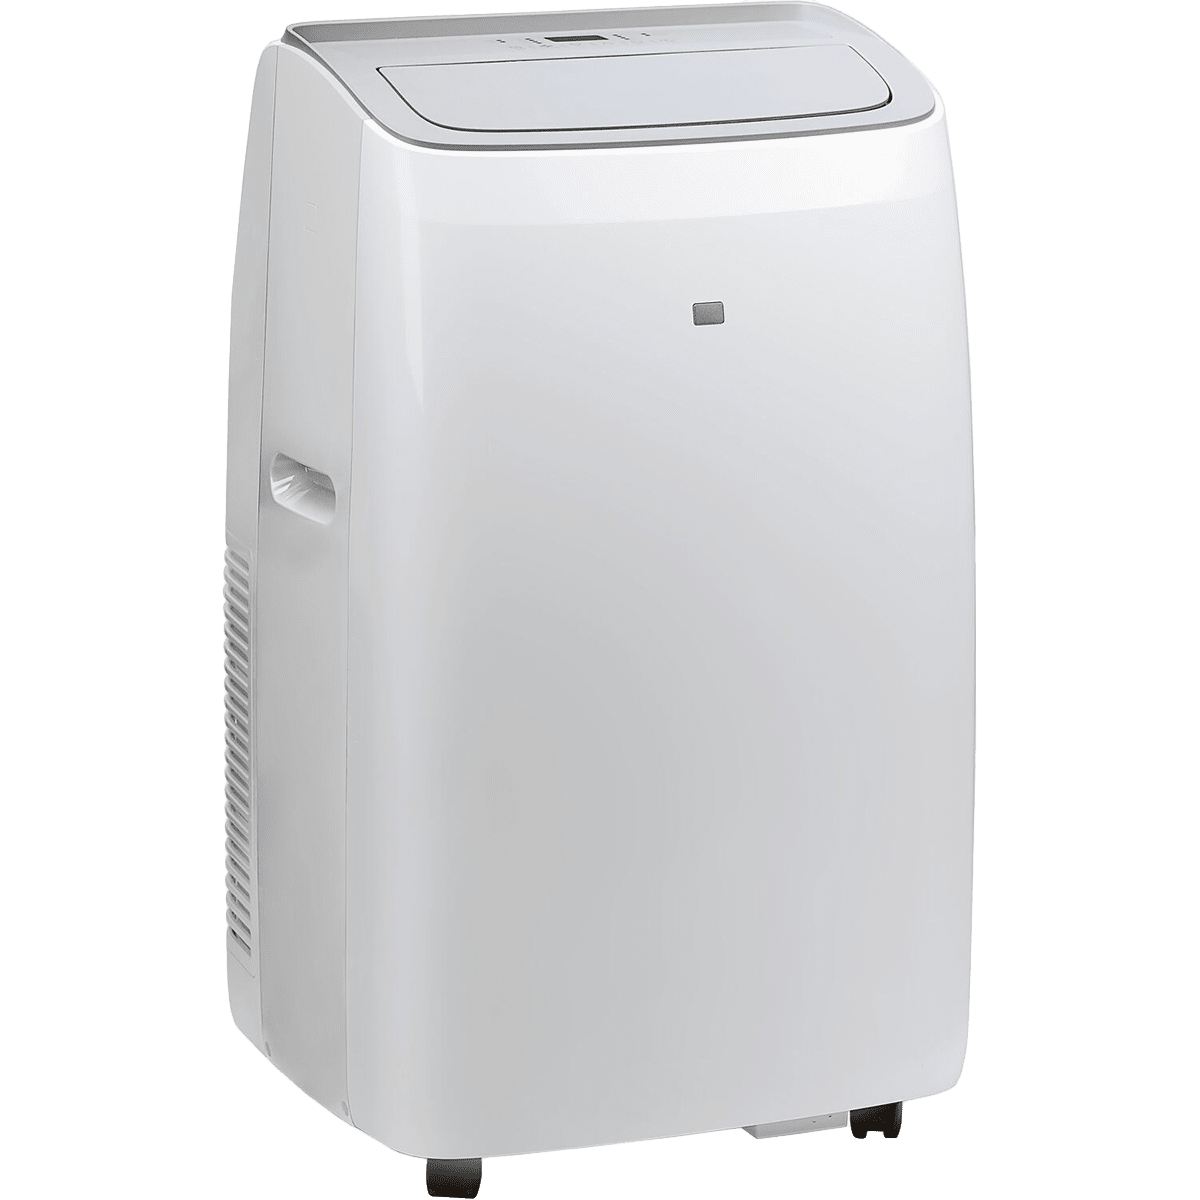 SPT 14,000 BTU Portable Air Conditioner 